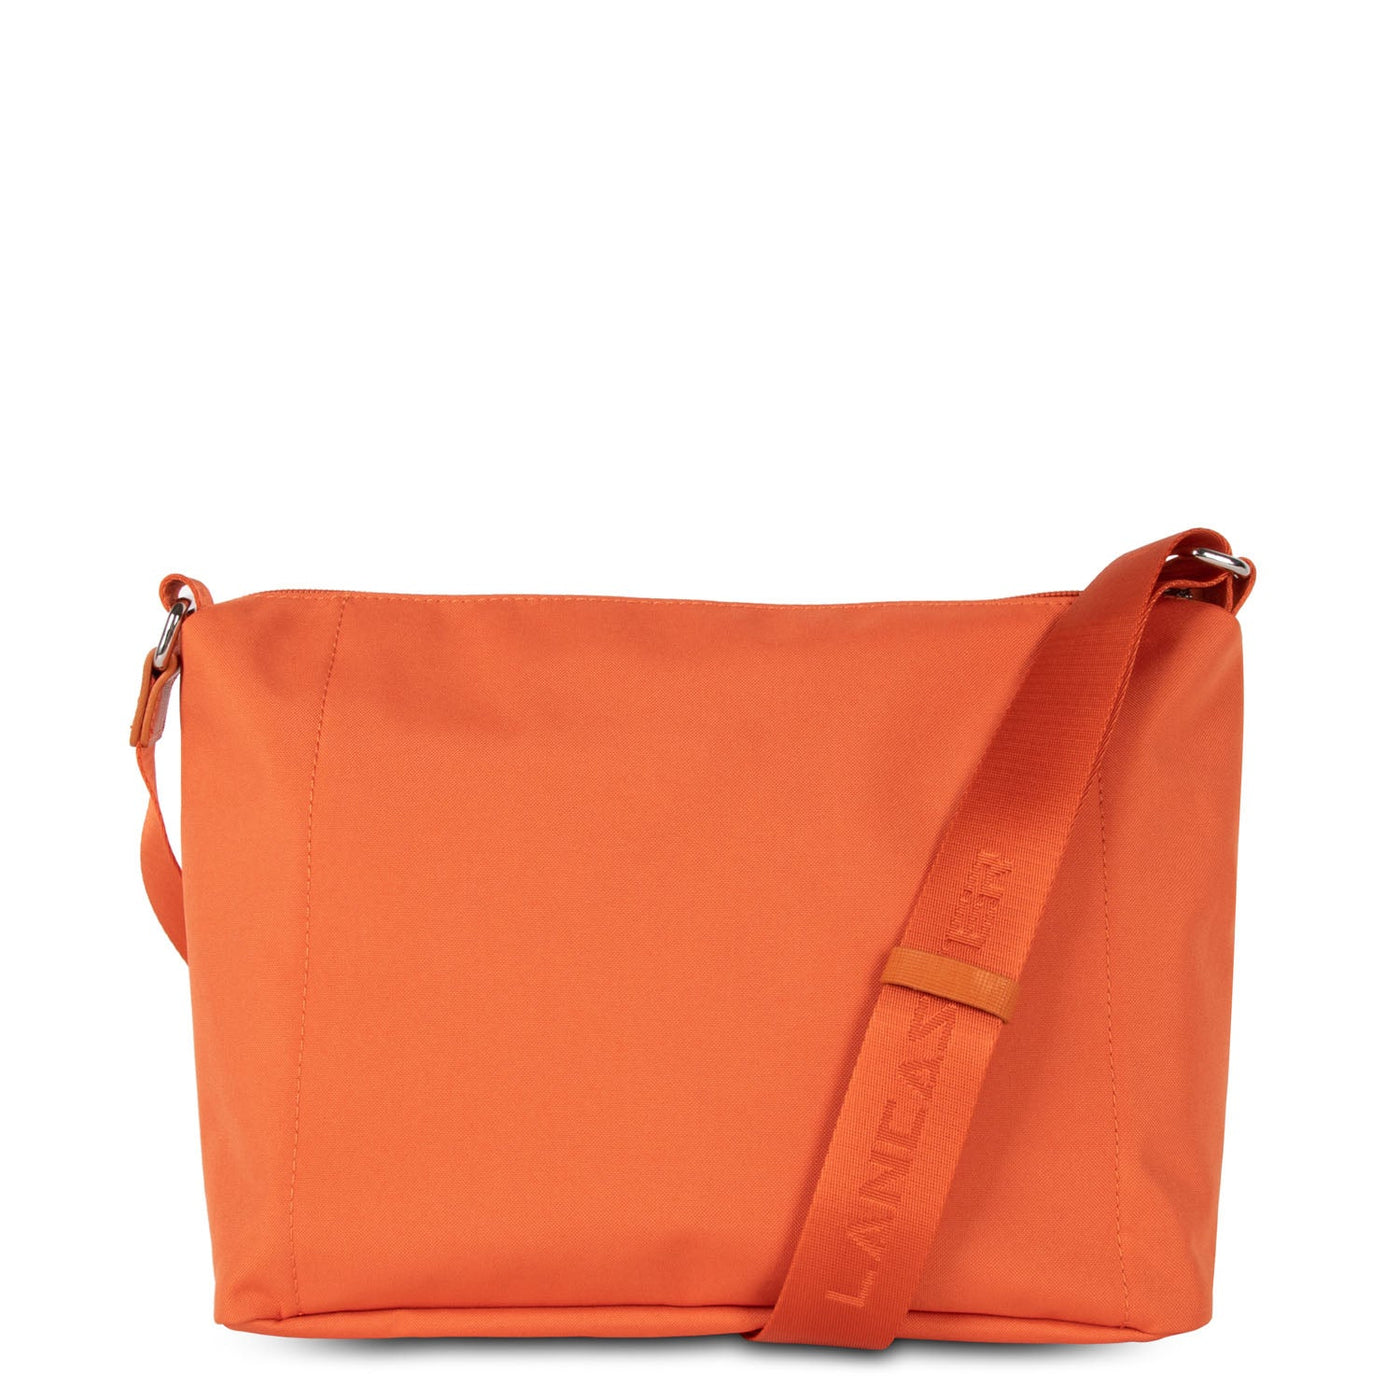 shoulder bag - smart kba #couleur_orange